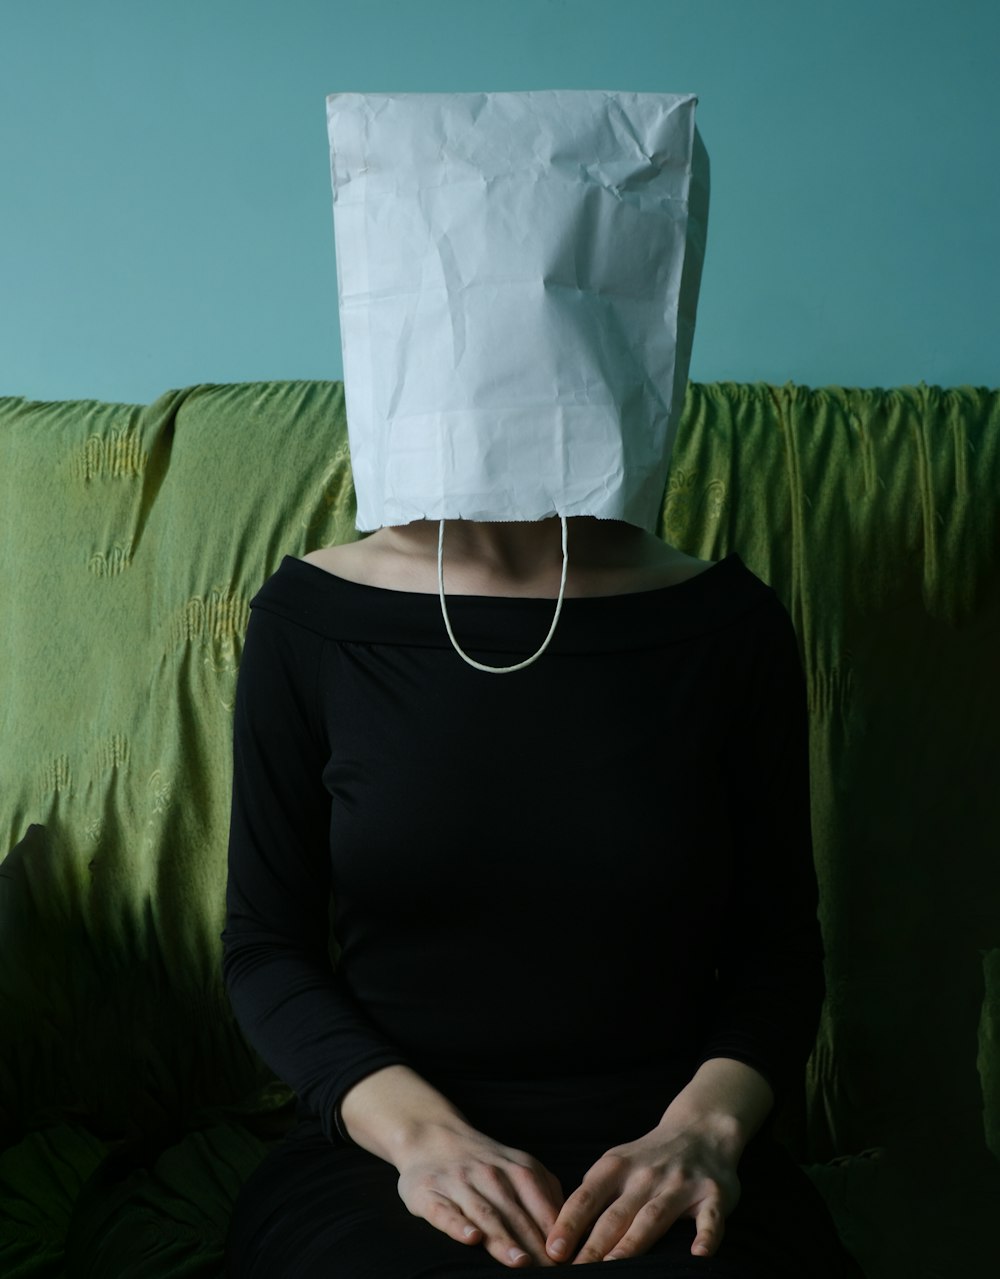 Una donna seduta su un divano con un sacchetto di carta in testa